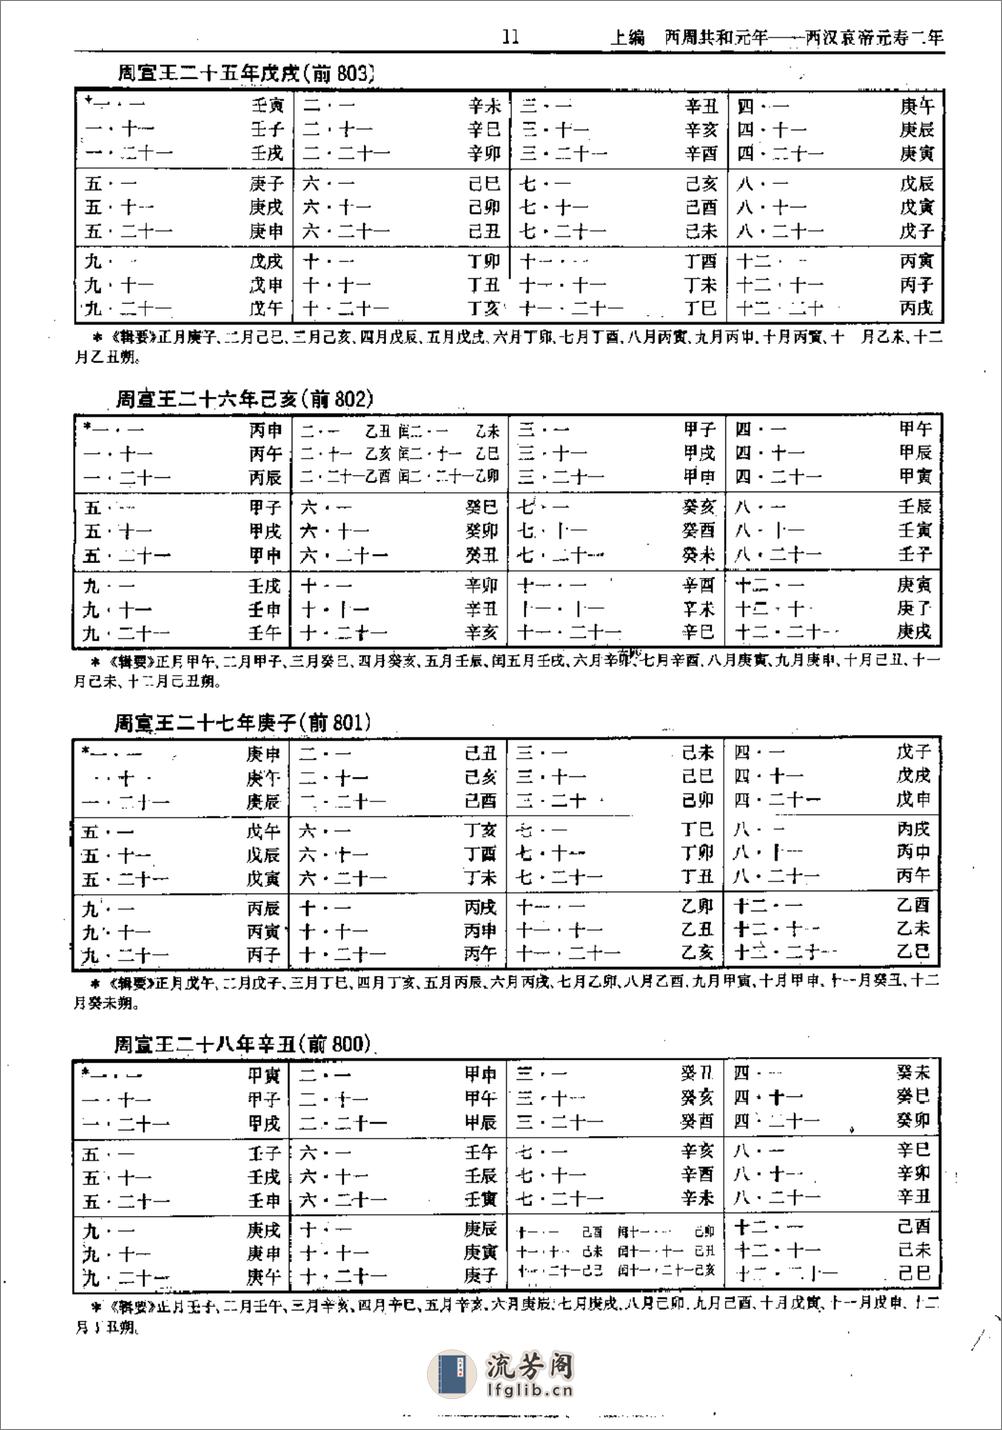 中国史历日和中西历日对照表·方诗铭·上海辞书1 - 第16页预览图